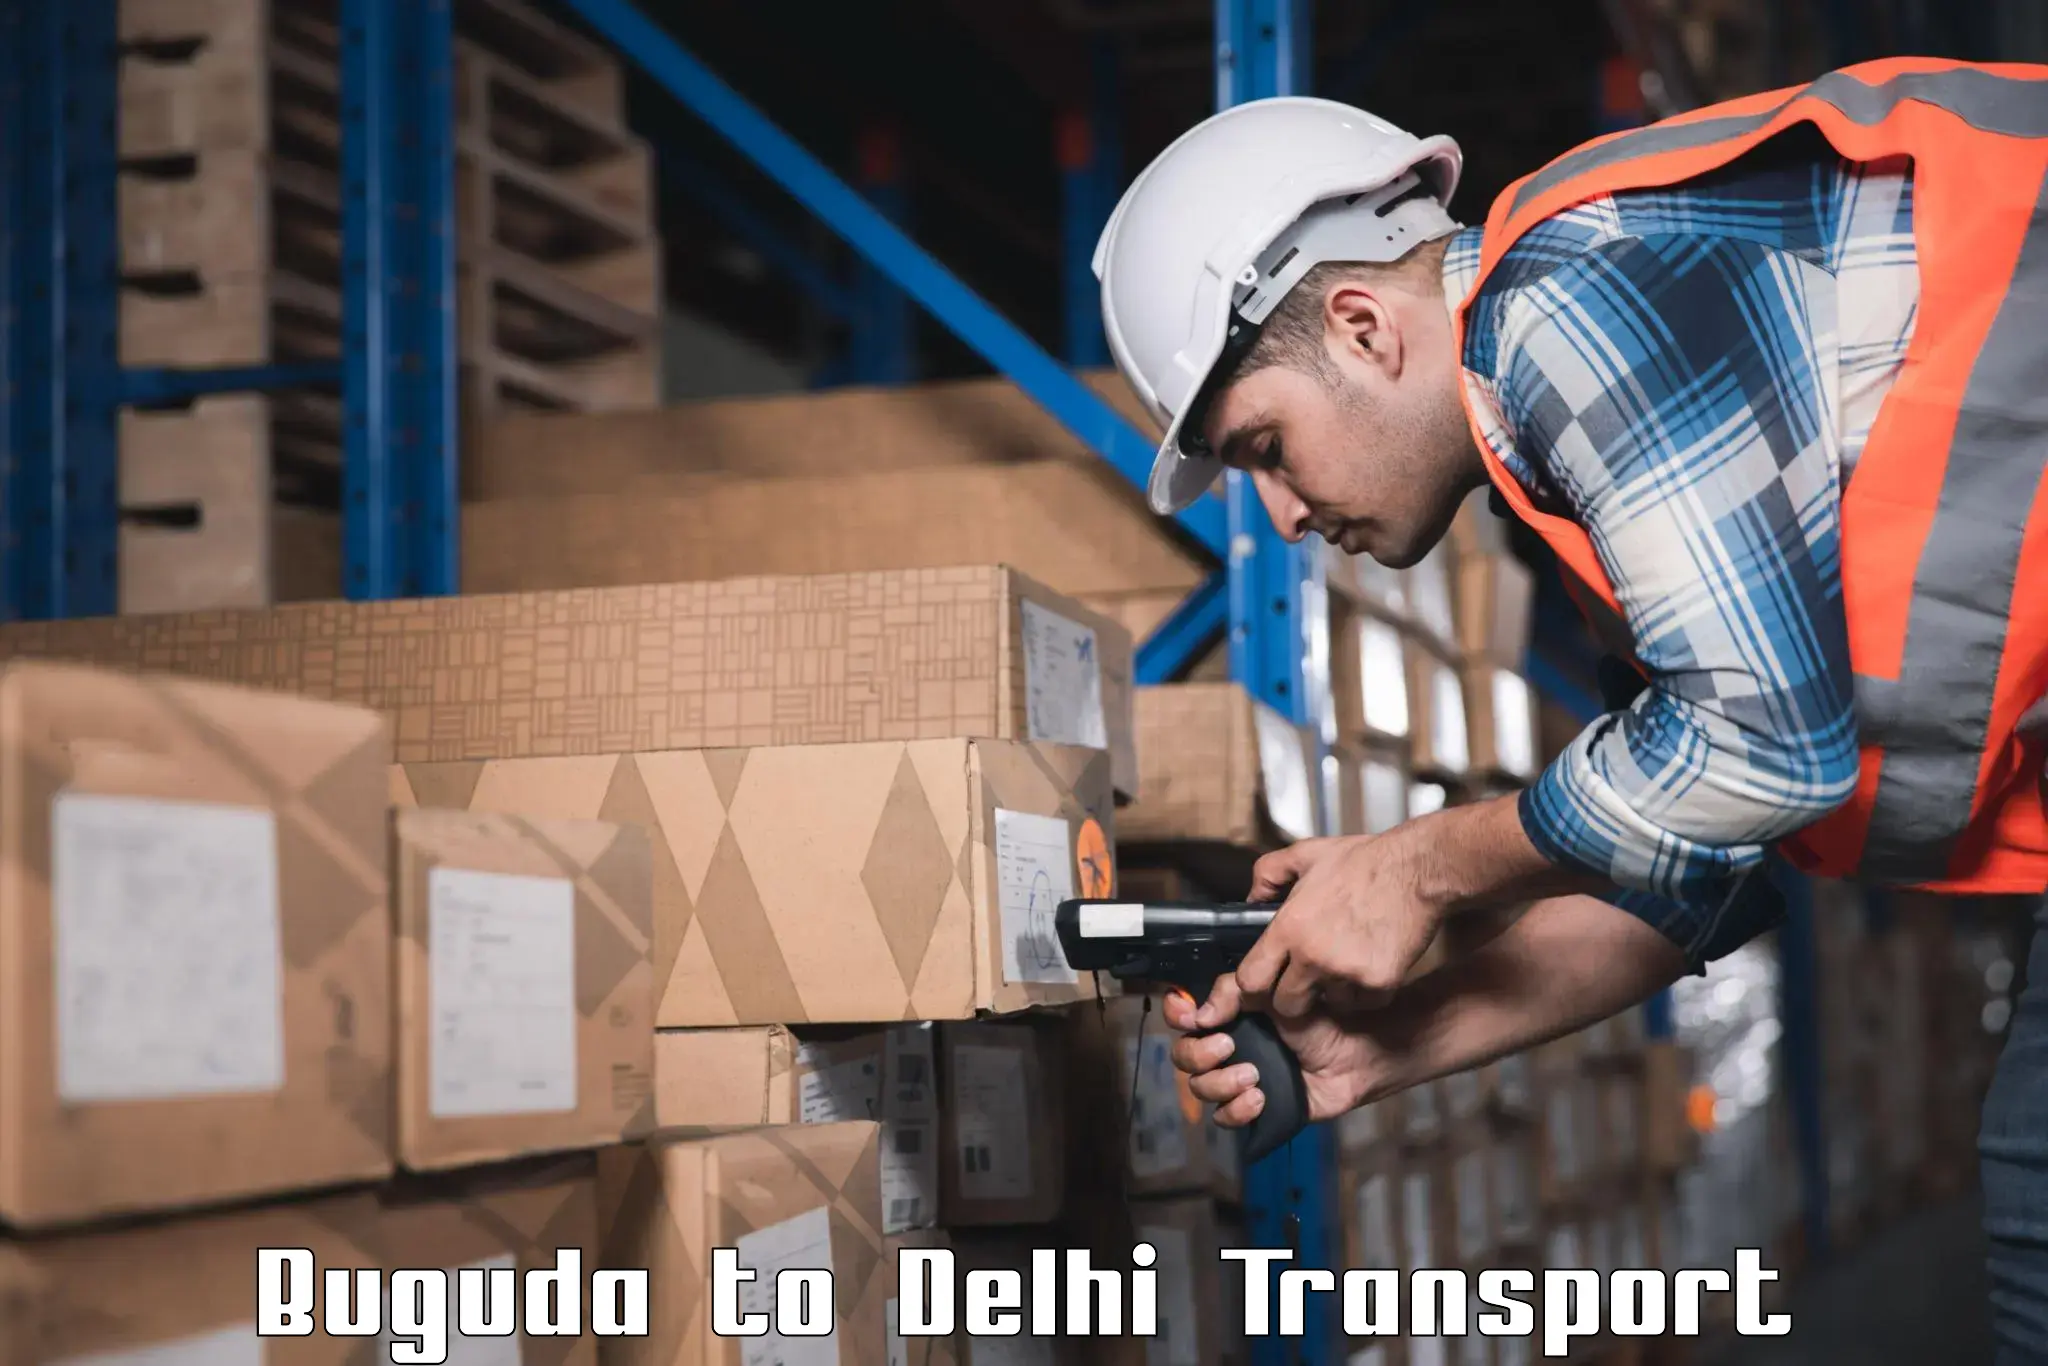 Parcel transport services Buguda to Delhi